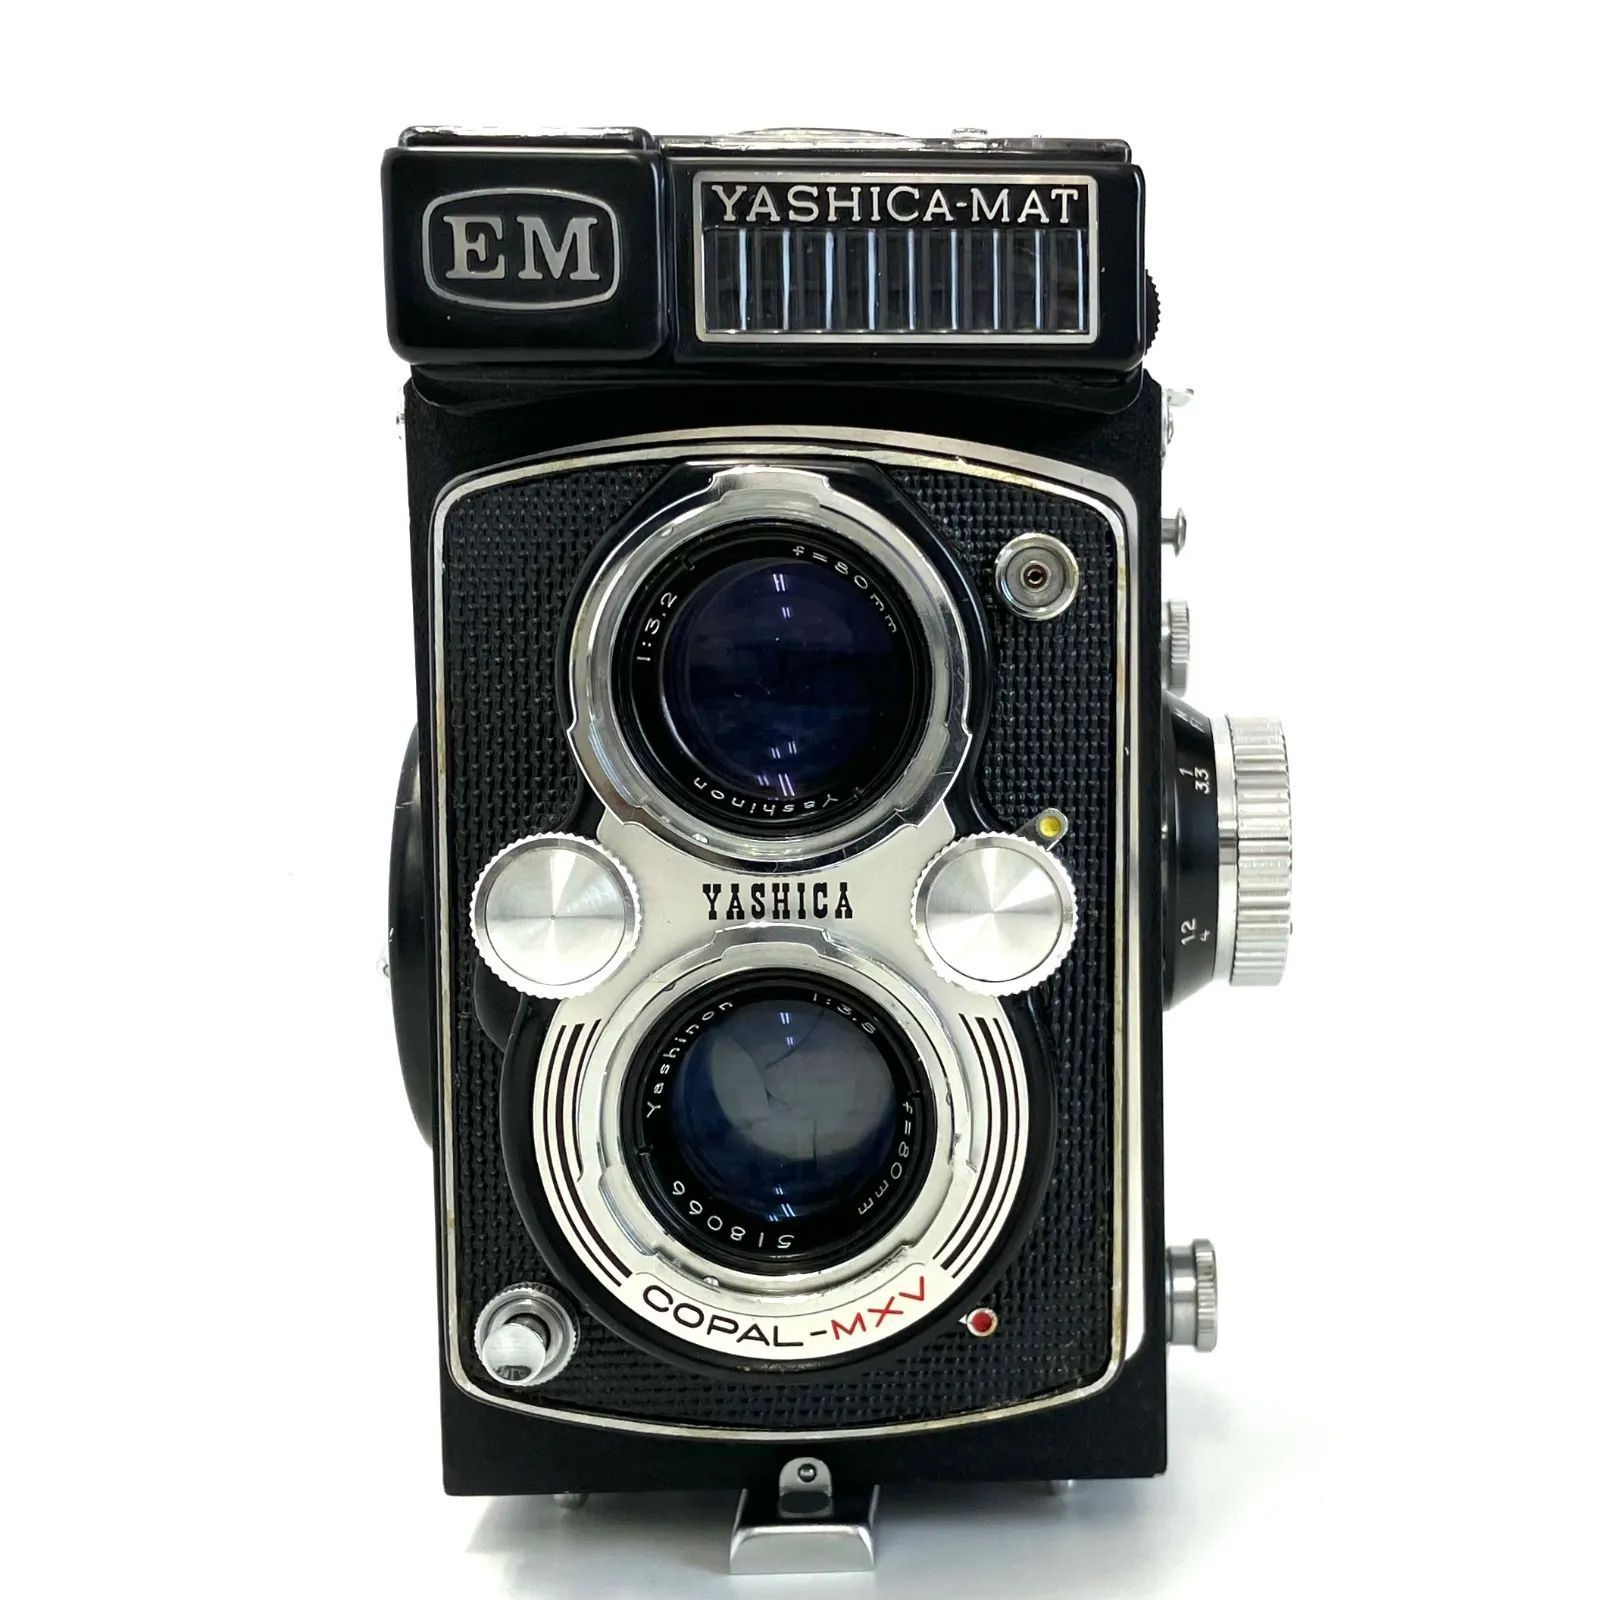 627924】YASHICA-MAT EM 二眼レフカメラ Yas hinon 80mm F3.2 ジャンク